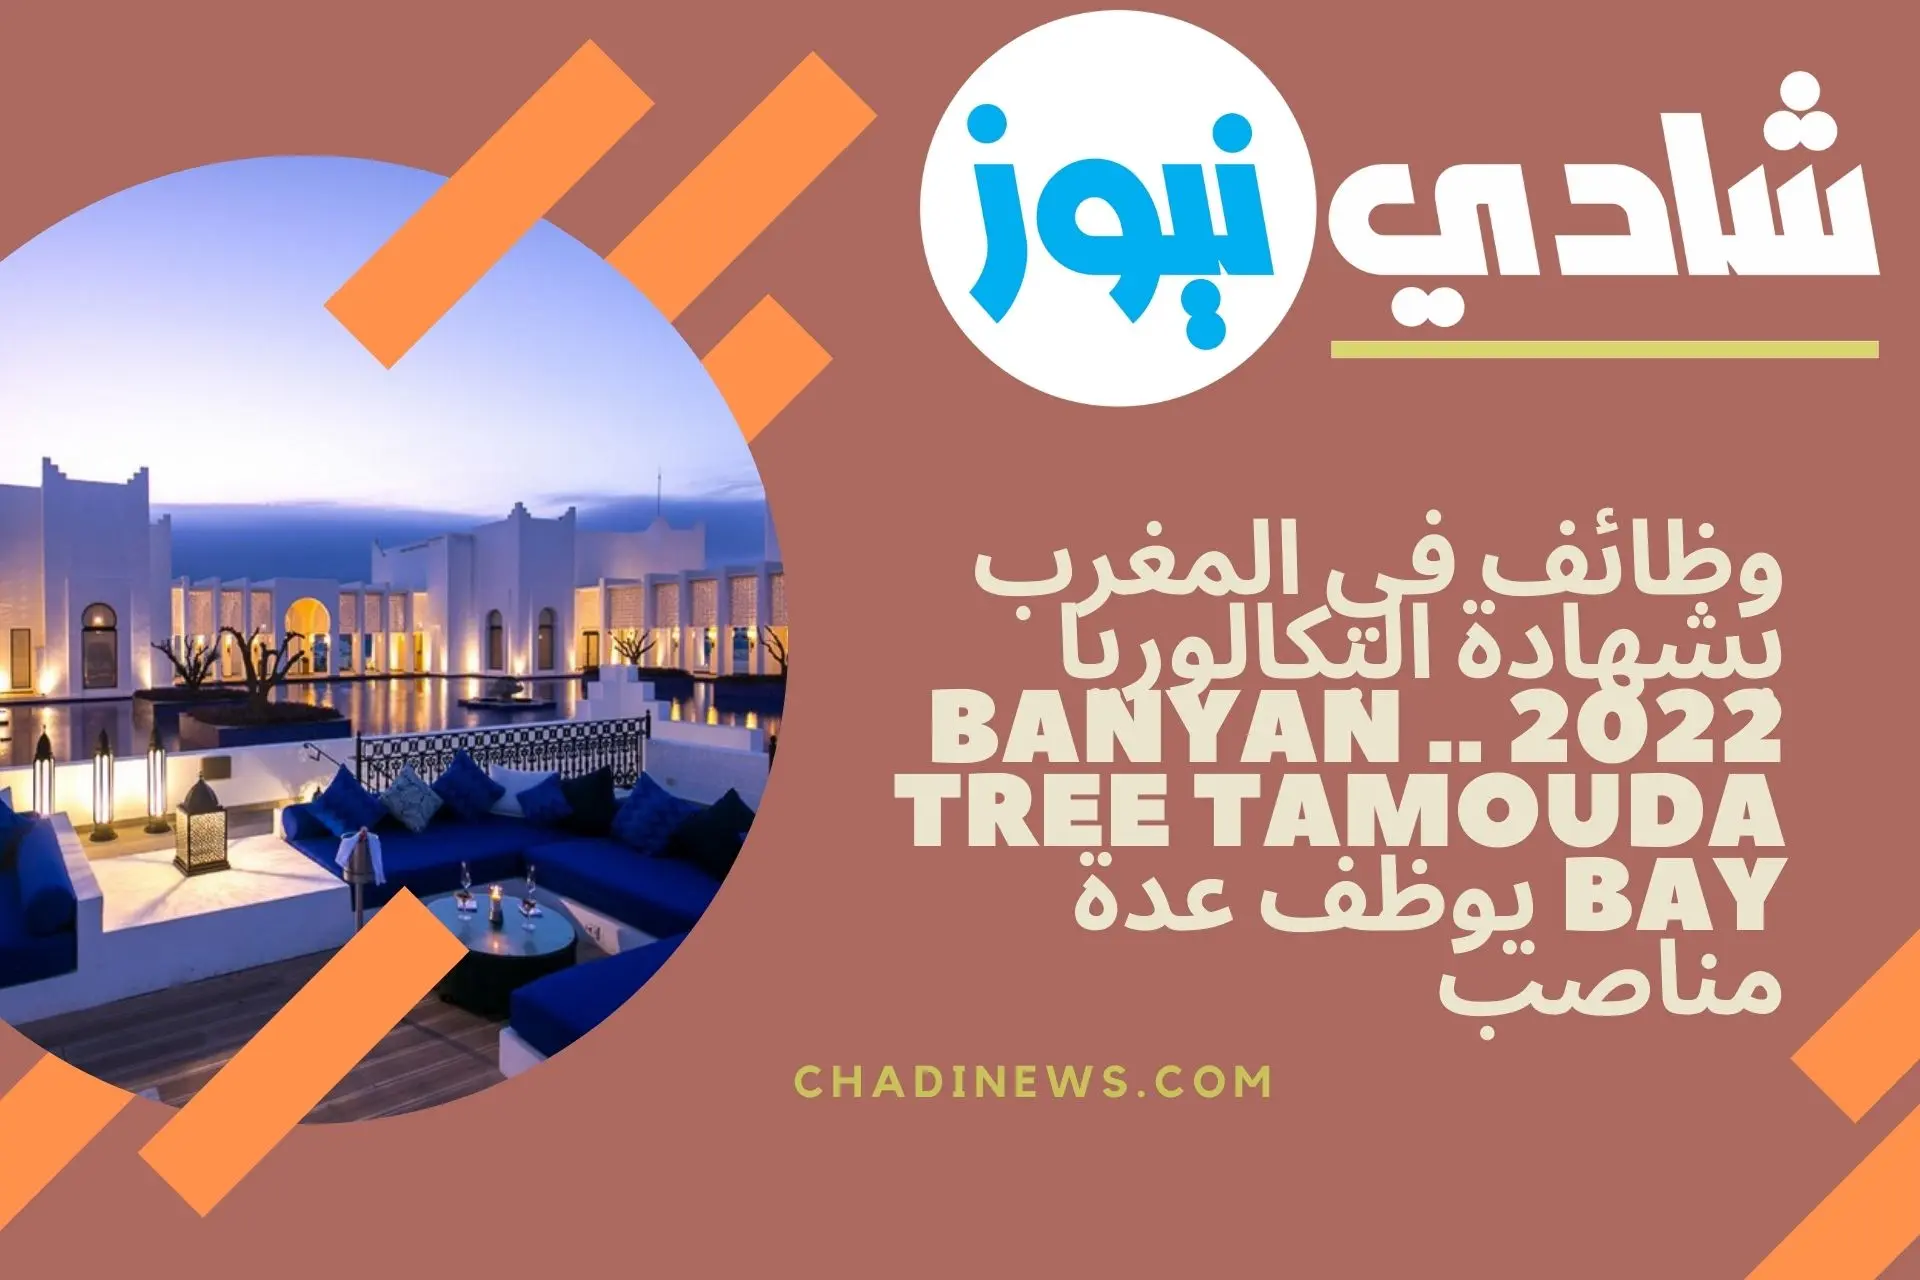 وظائف في المغرب بشهادة البكالوريا 2022 .. Banyan Tree Tamouda Bay يوظف عدة مناصب